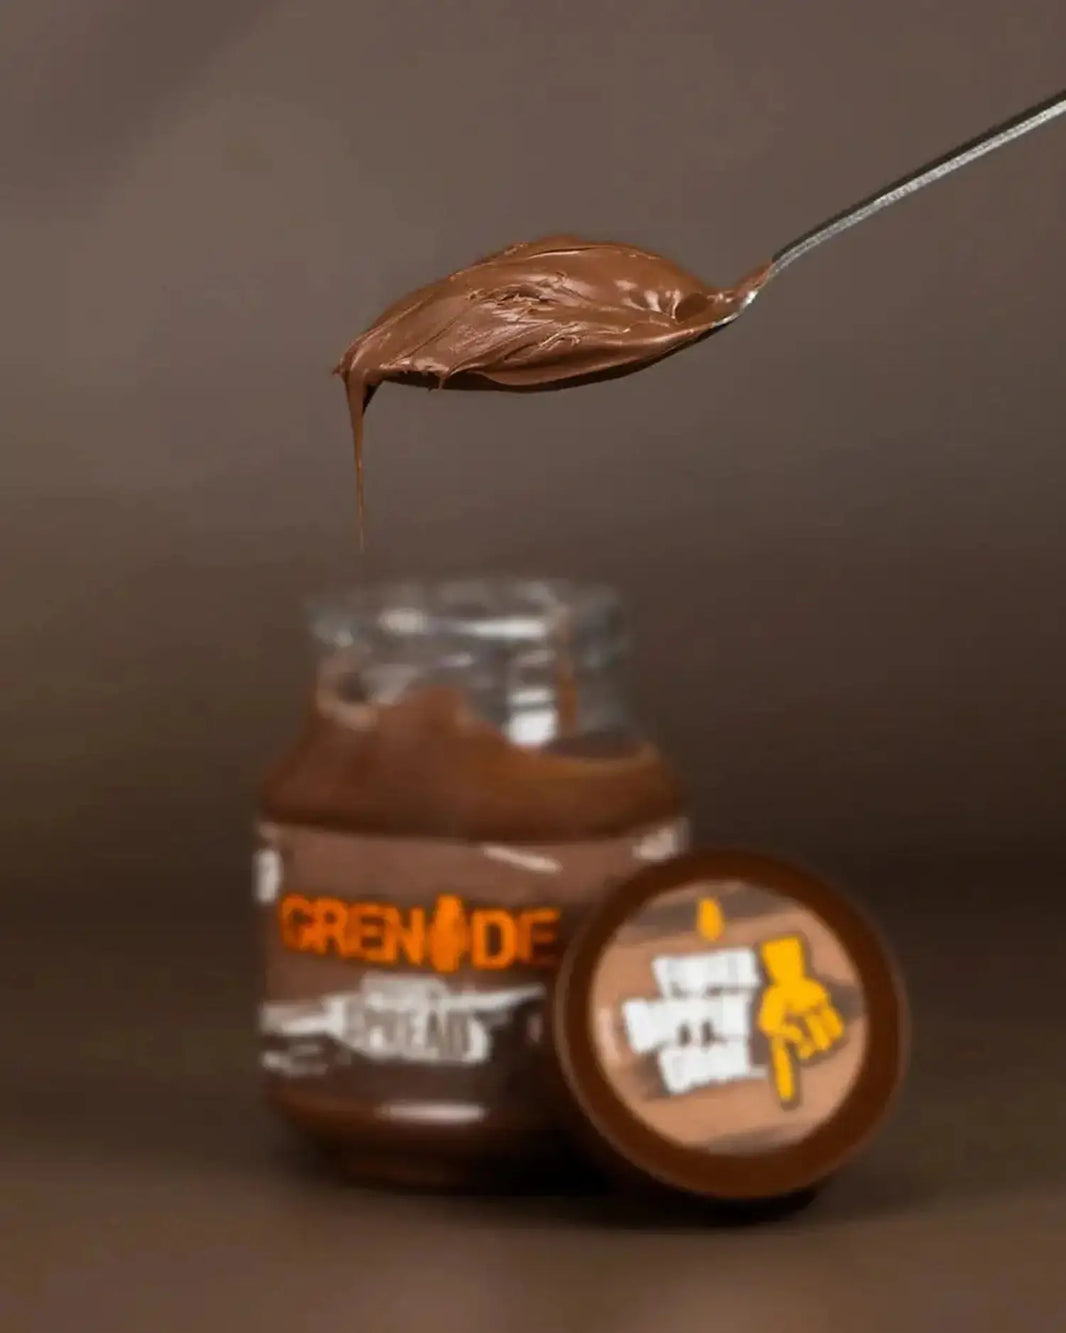 Grenade Grenade Protein Spread 360 g (Brotaufstrich) Milk Chocolate kaufen bei HighPowered.ch